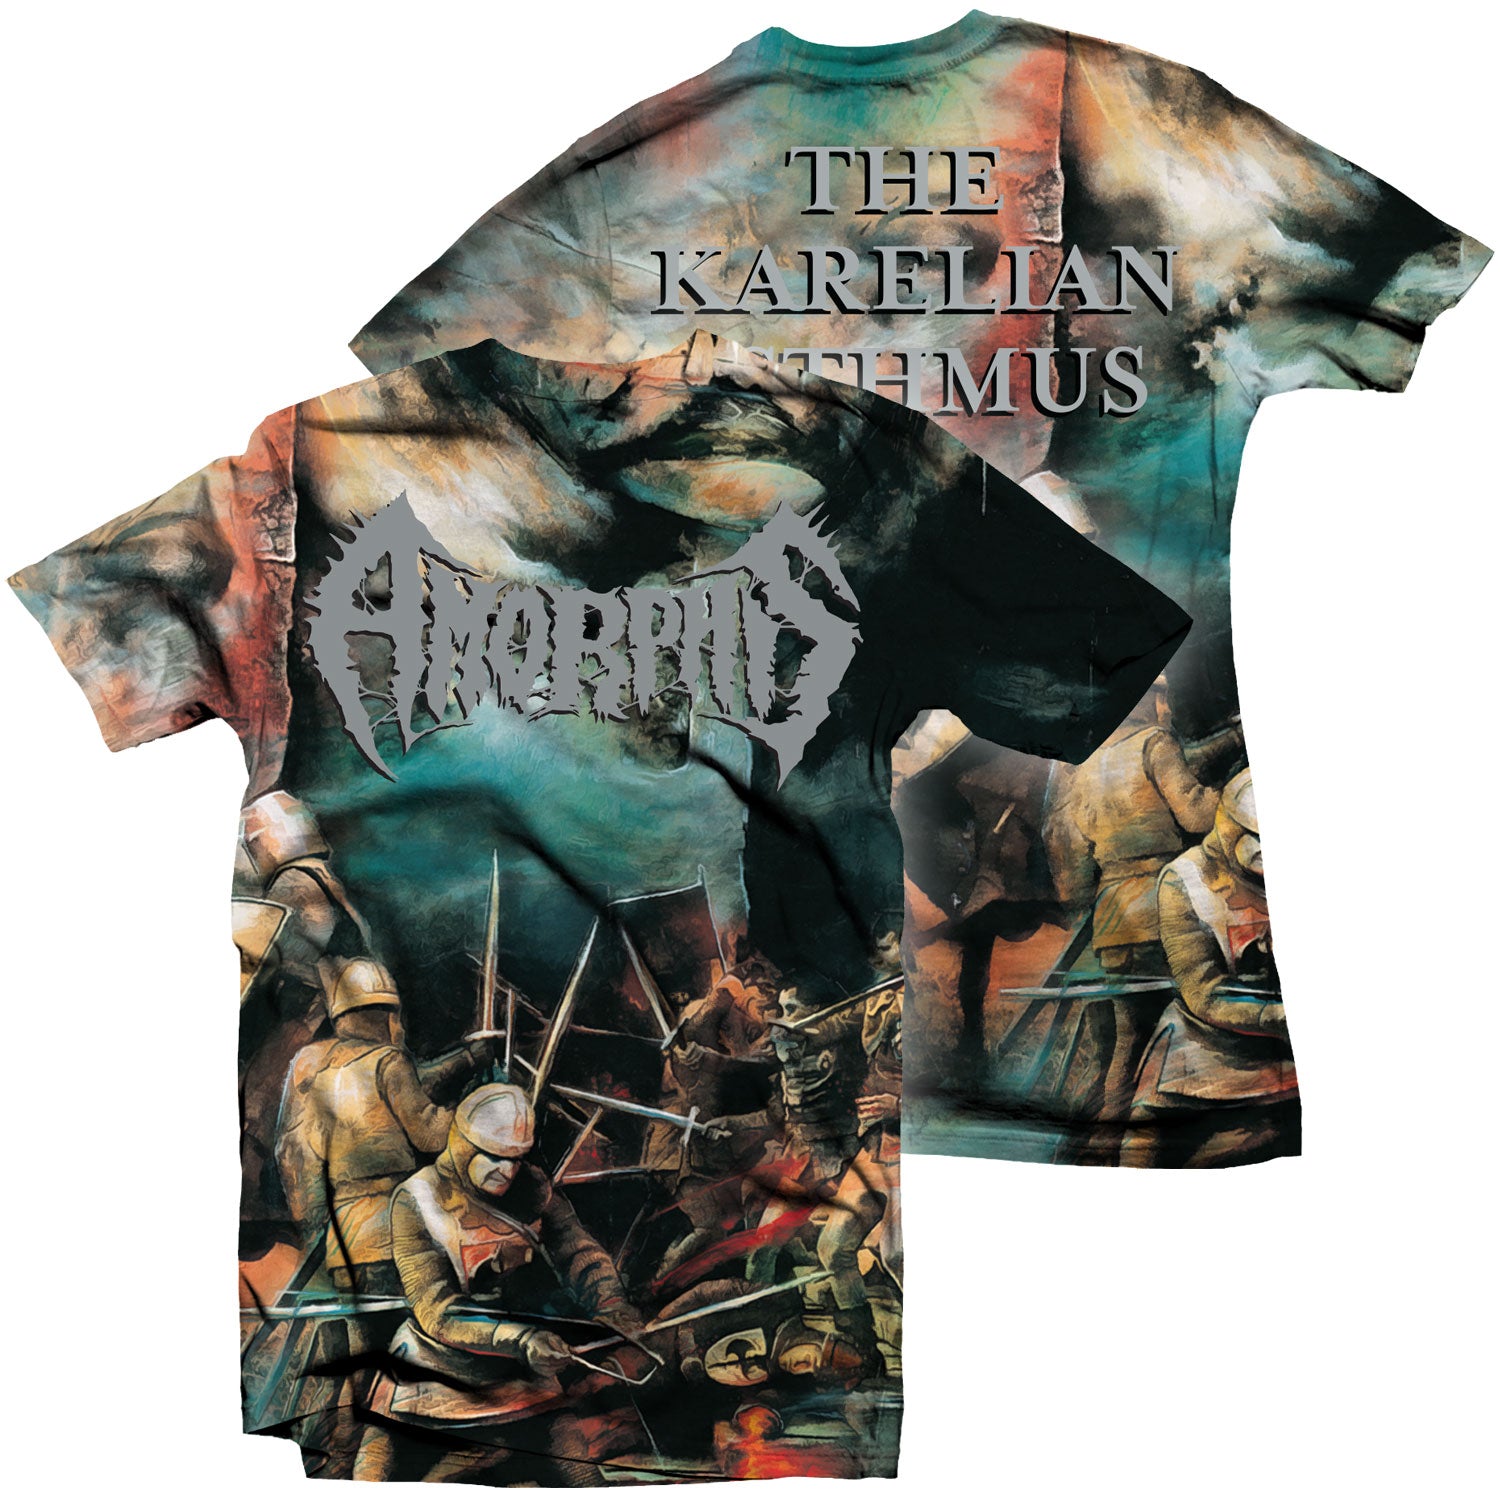 Amorphis "The Karelian Isthmus All Over Print" T-Shirt